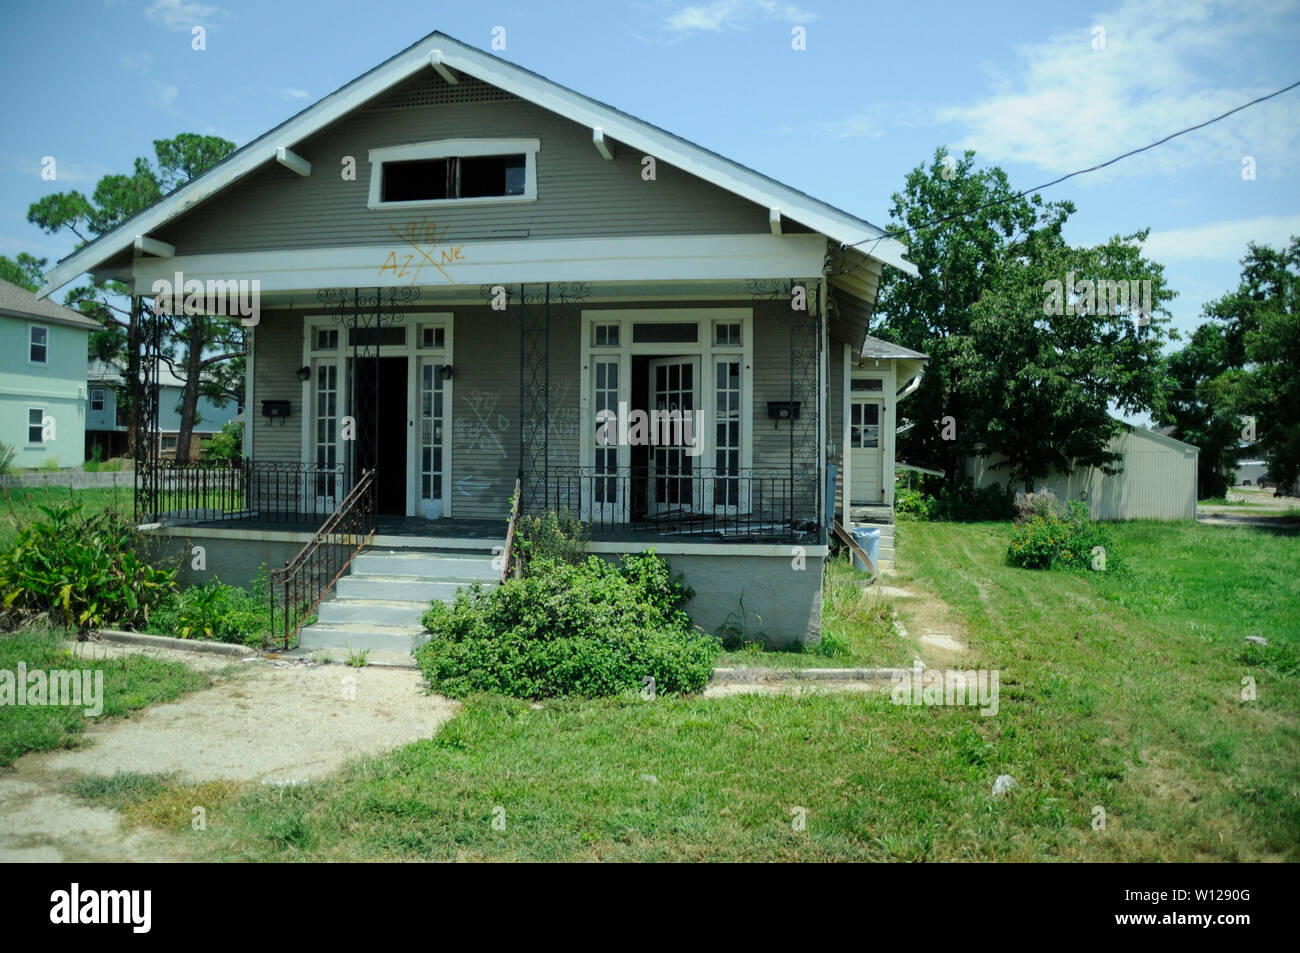 Homes in Louisiana after Hurricane Katrina Stock Photo